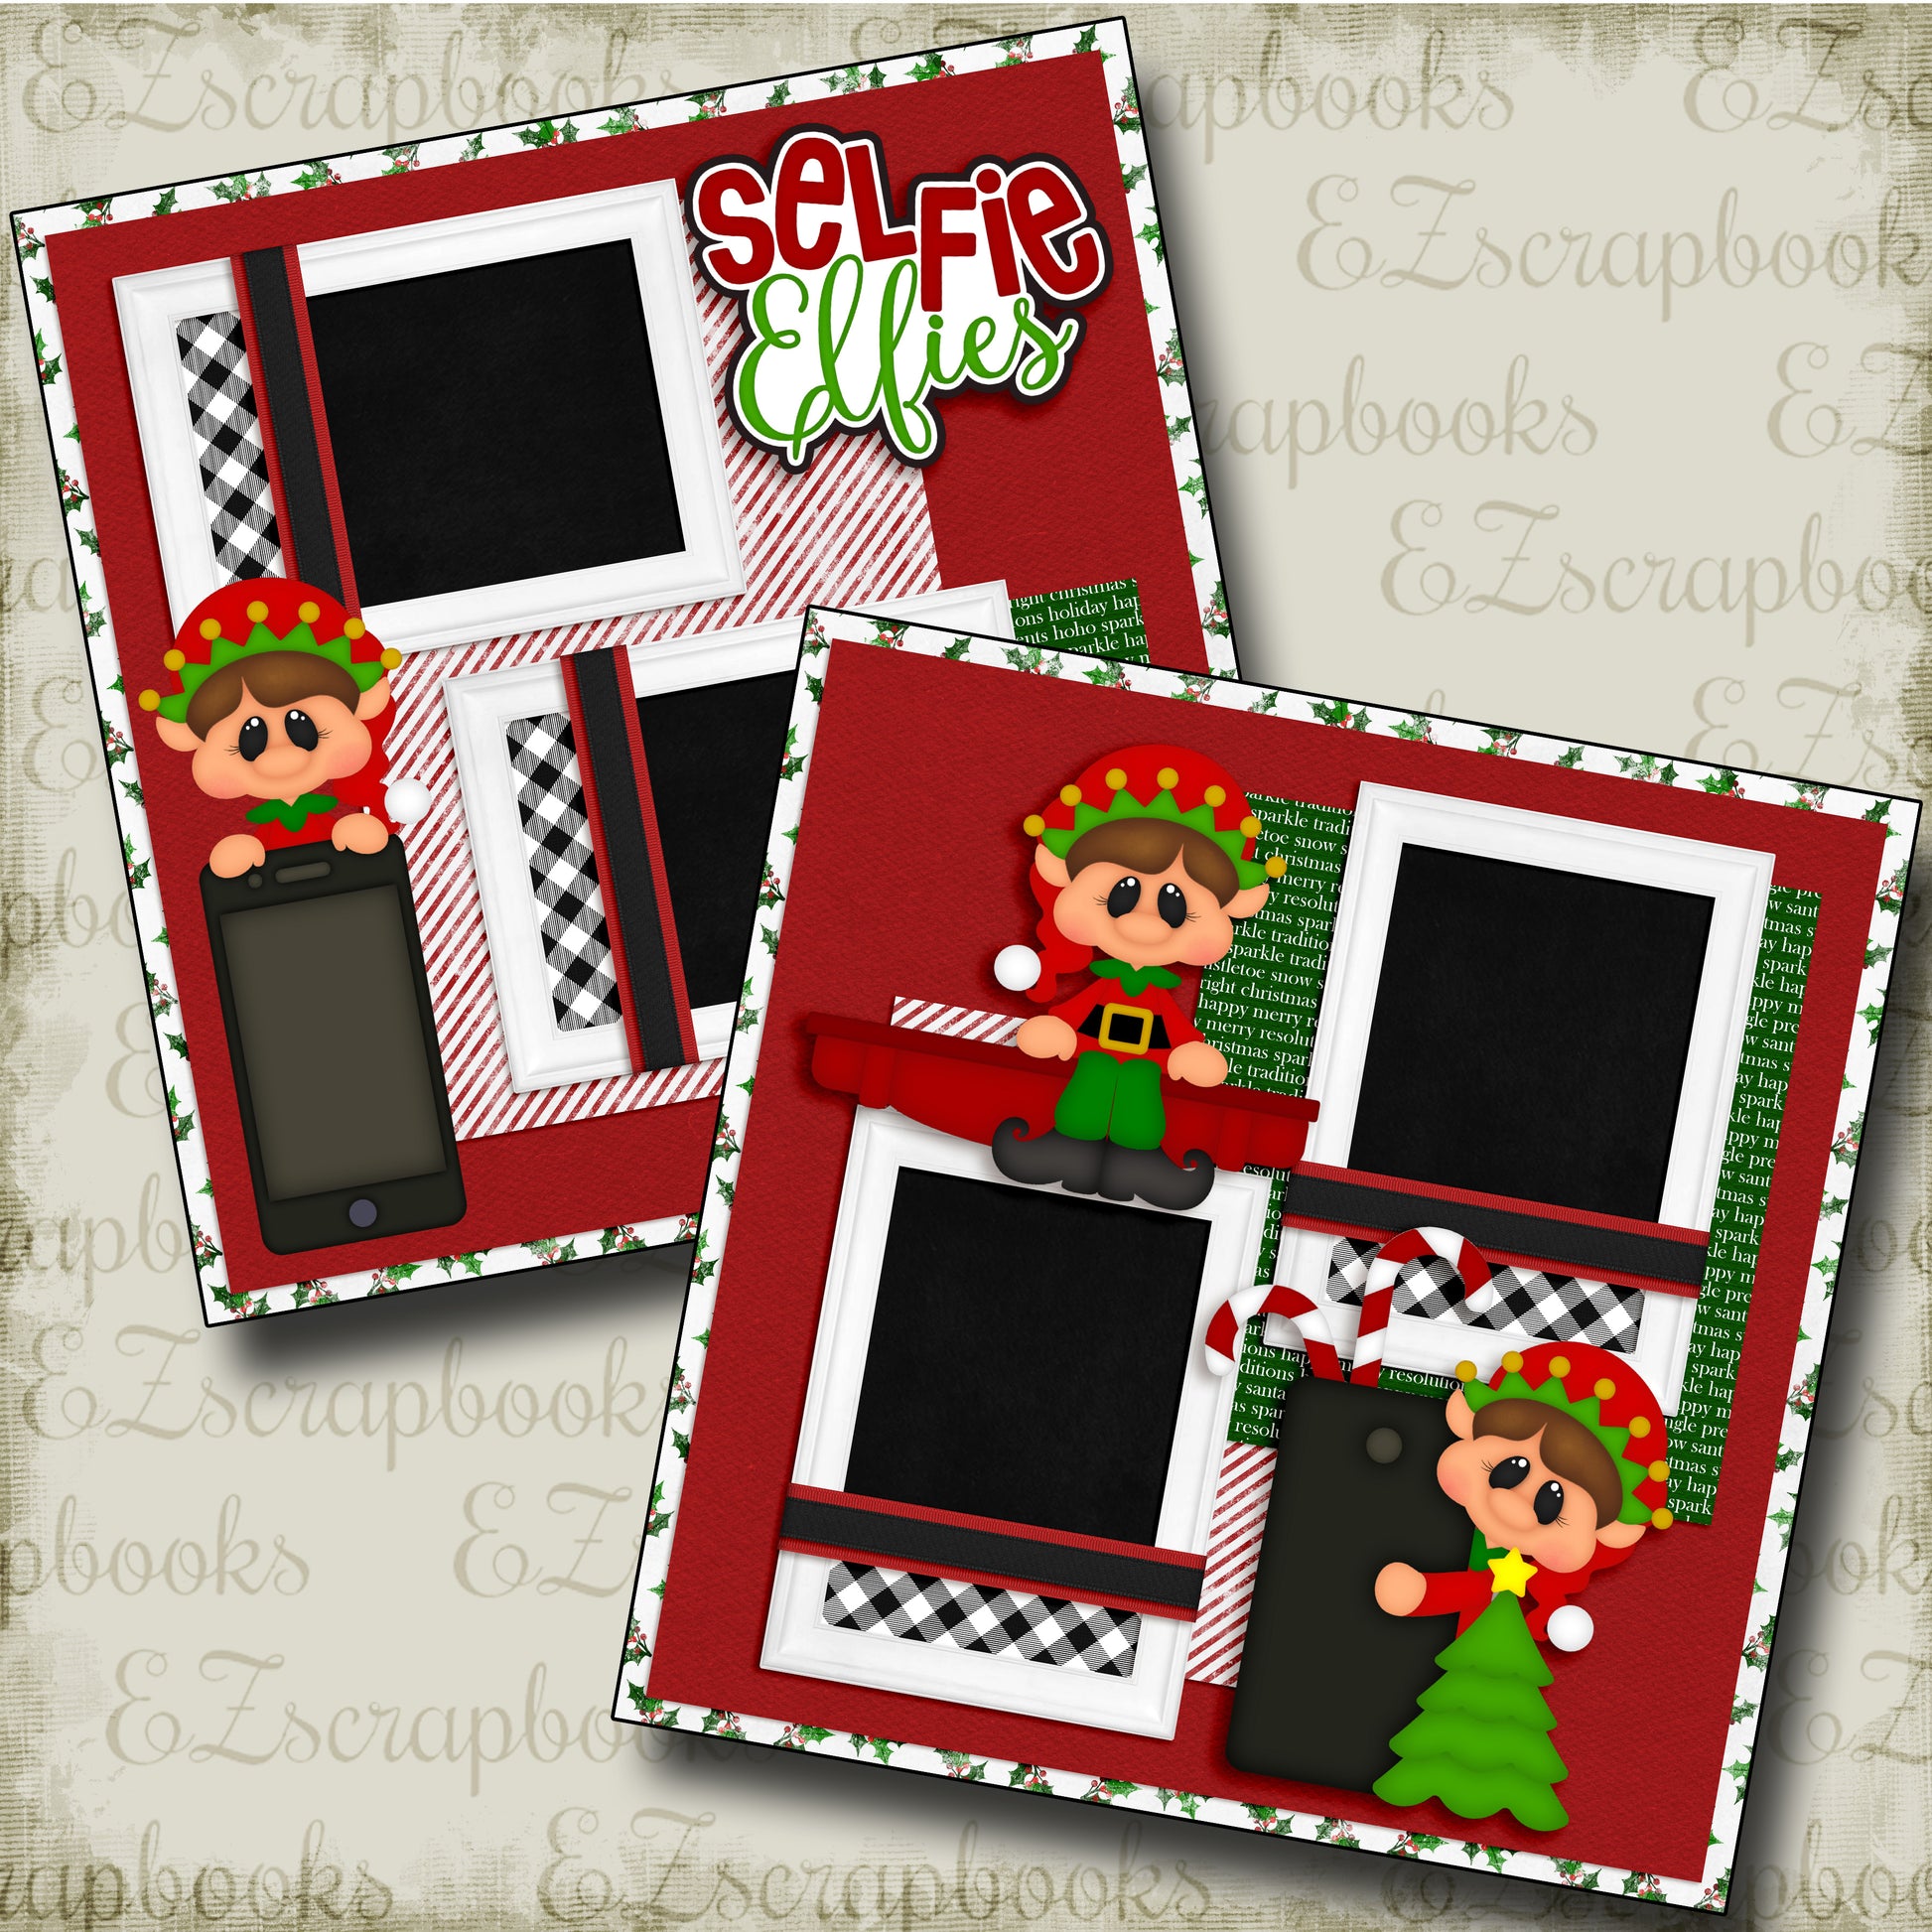 Selfie Elfies - 4676 - EZscrapbooks Scrapbook Layouts Christmas